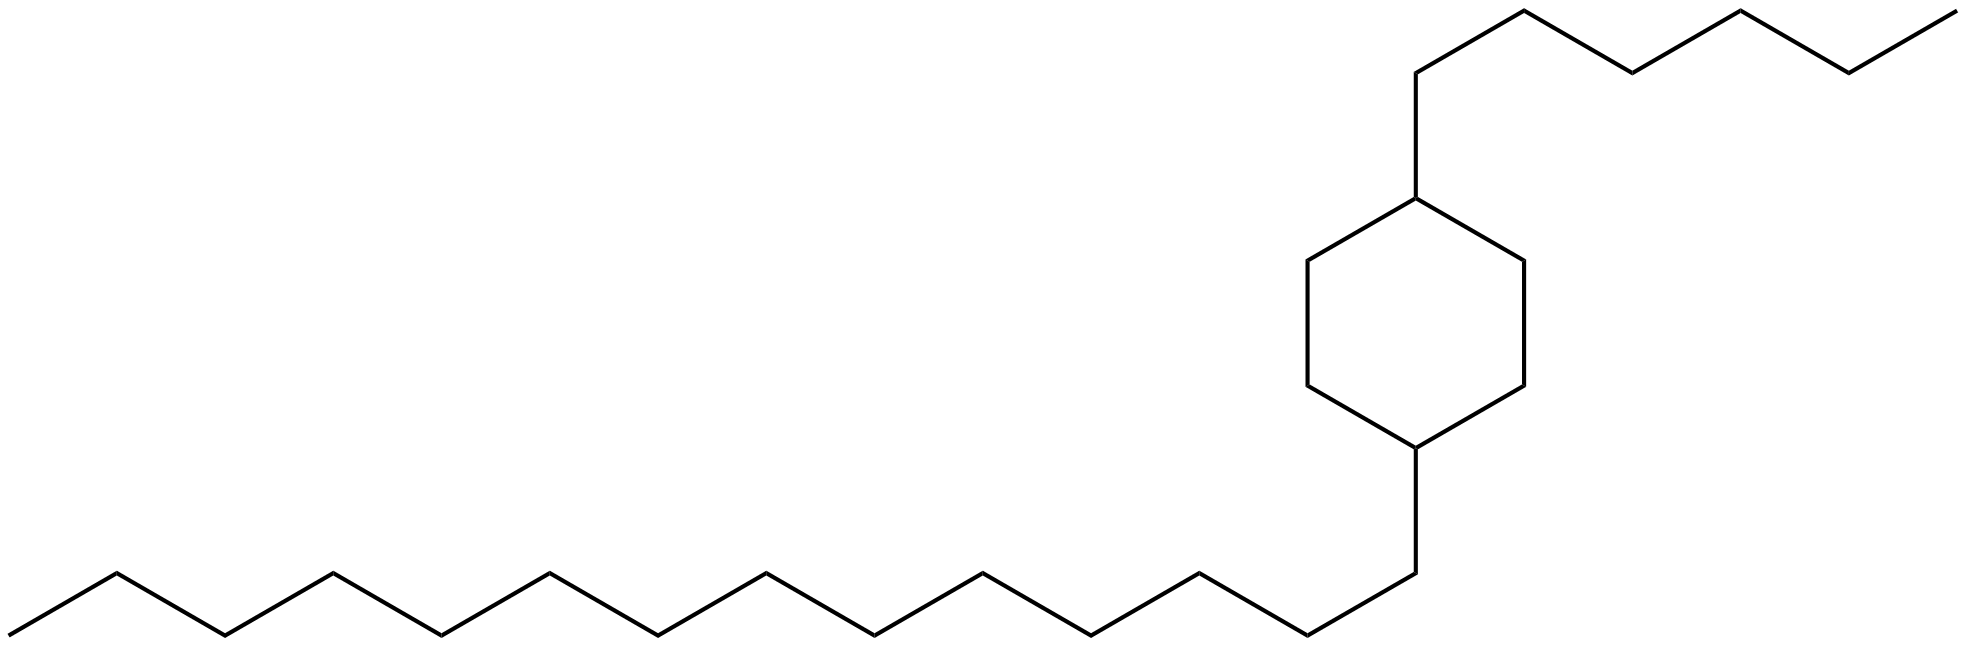 Image of 1-hexyl-4-tetradecylcyclohexane